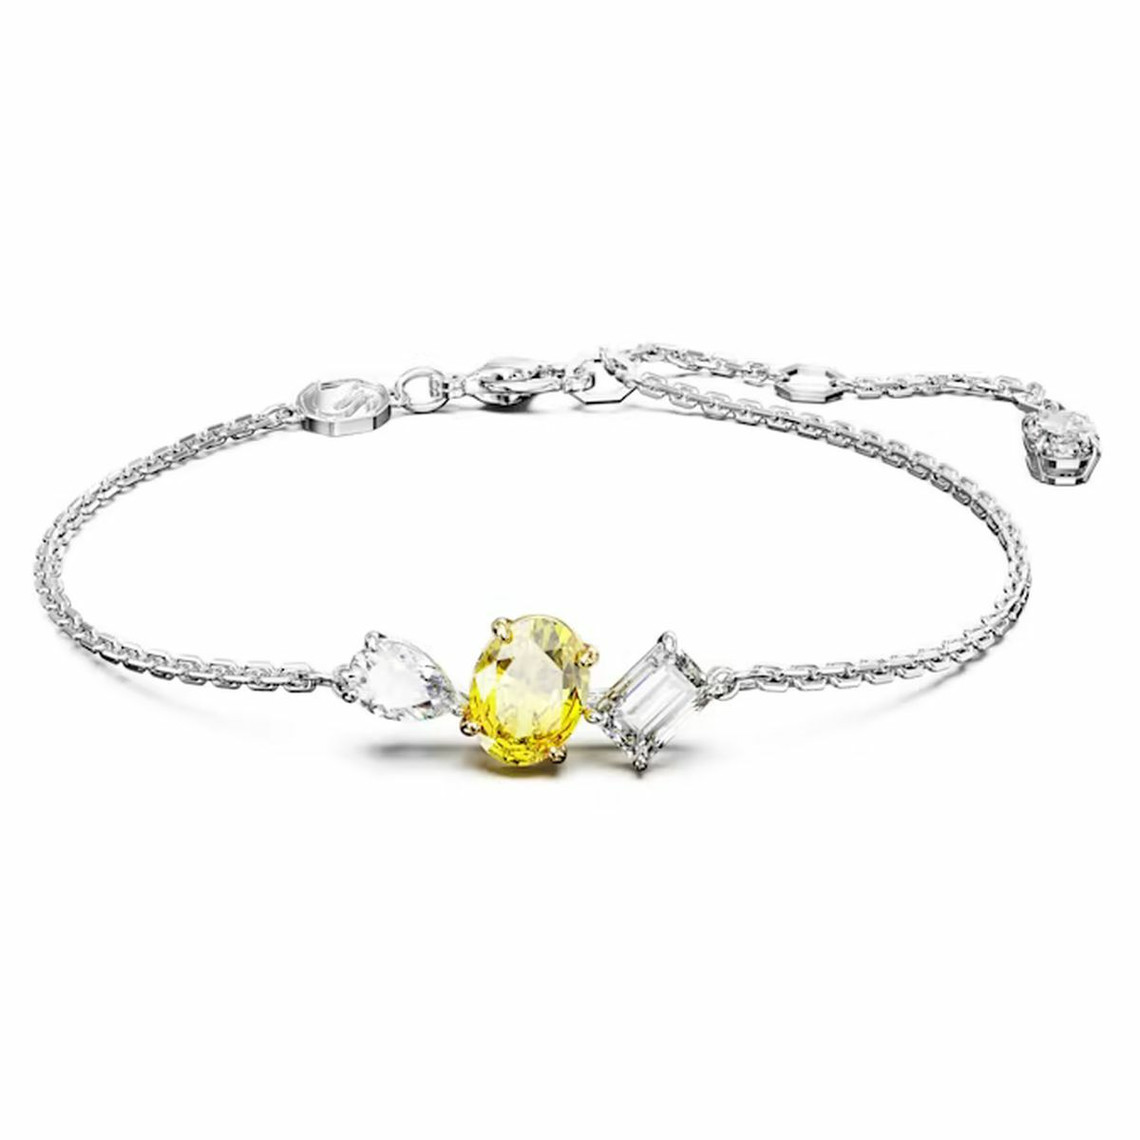 Bracelet Femme 5668362 Yellow White/MIX M - Mesmera